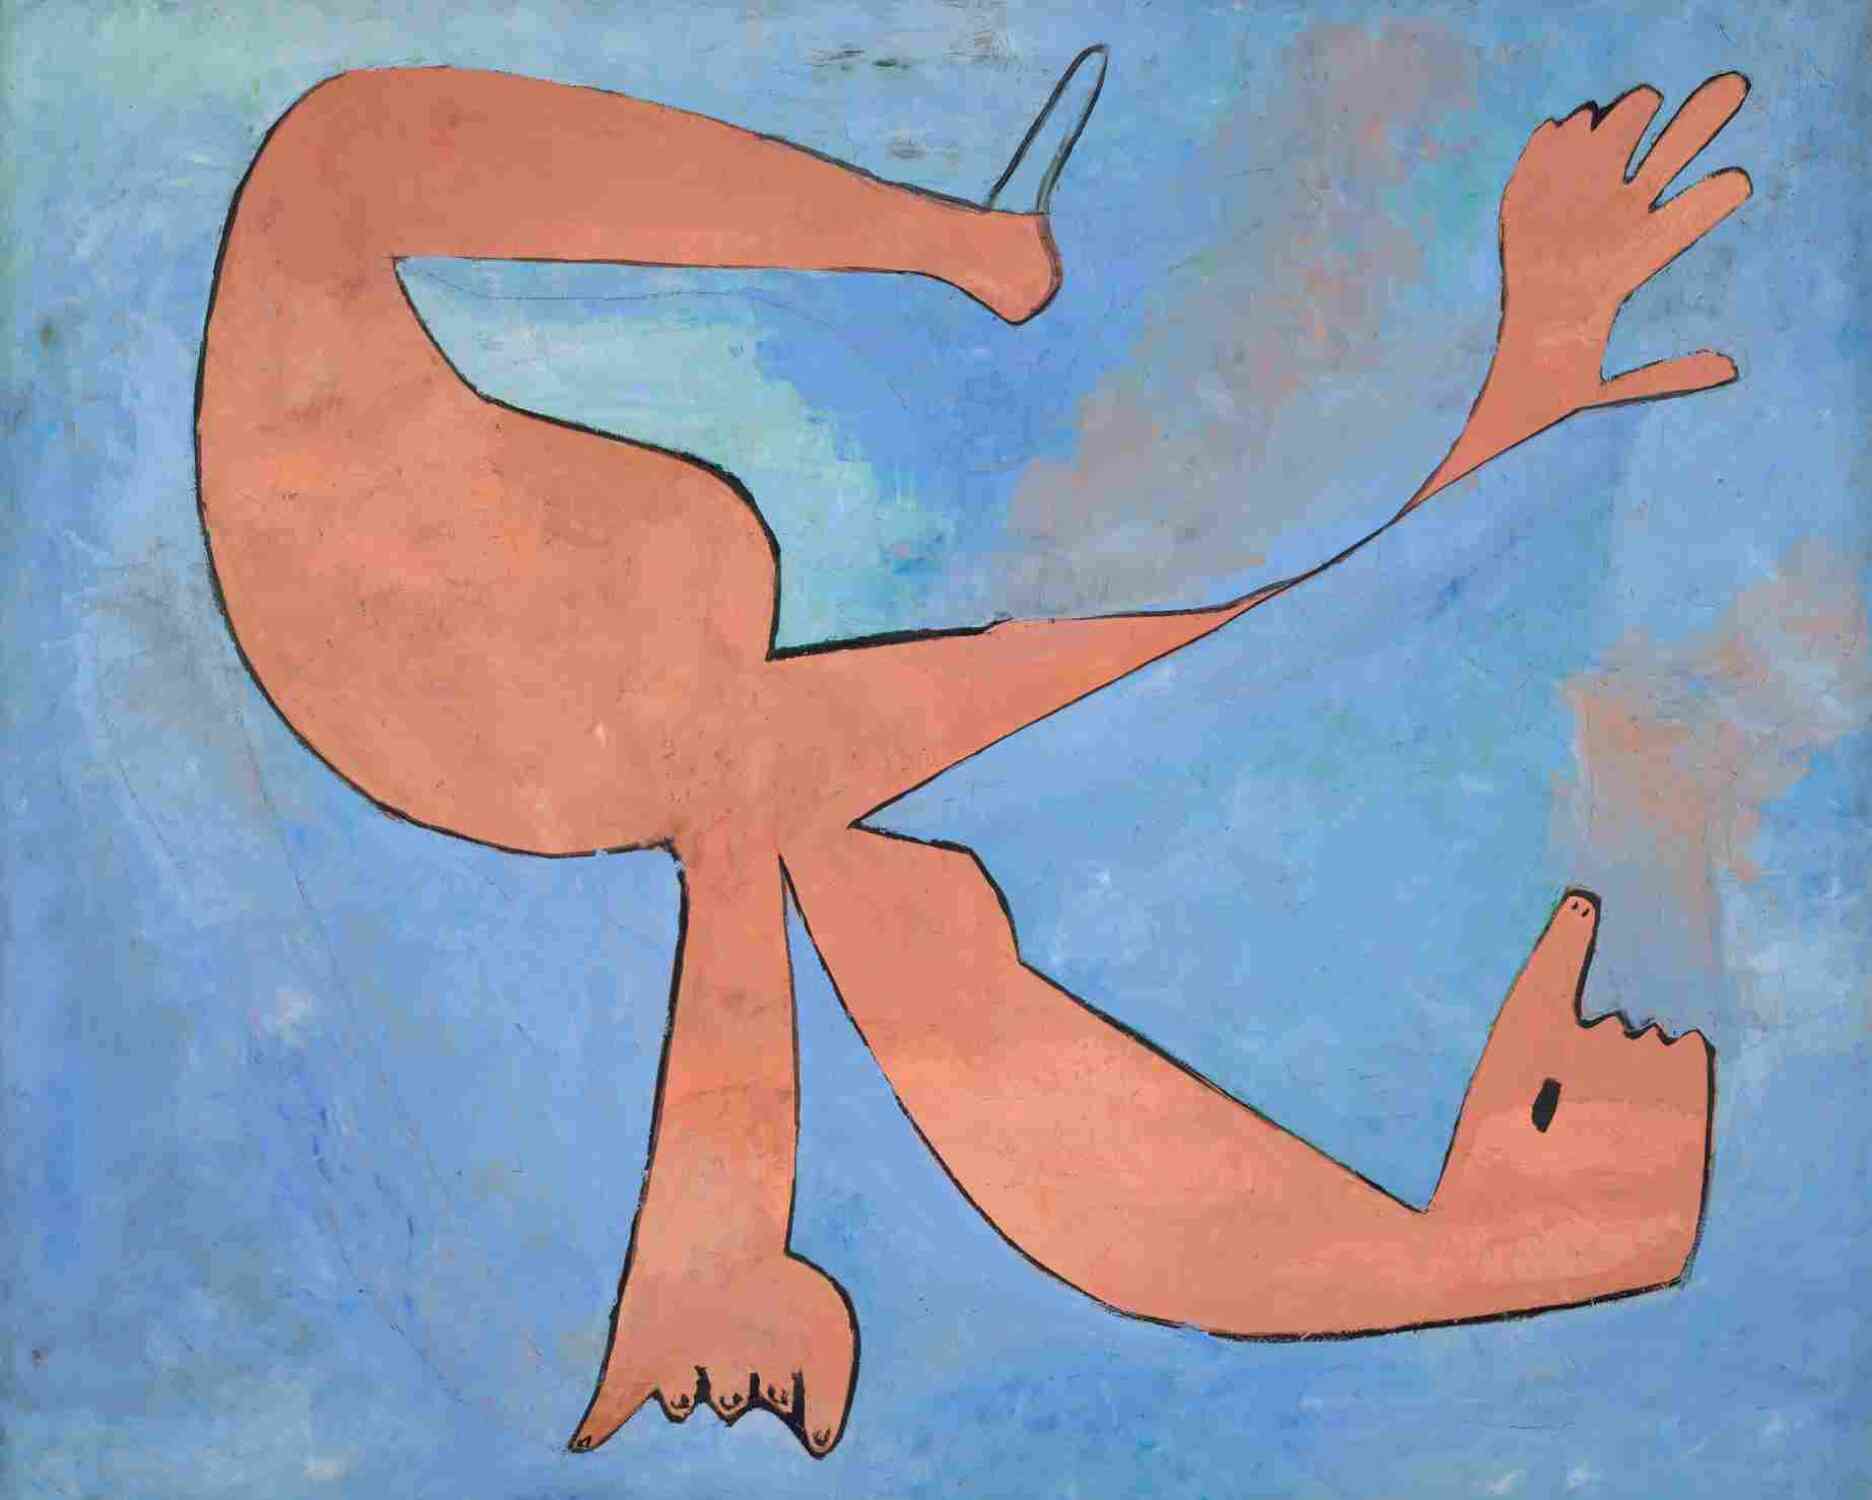 « En novembre 1929, Pablo Picasso peint “La Nageuse”. Dans la lignée des séries de “Baigneuses” que lui inspire Marie-Thérèse Walter à Dinard, il joue des contrastes de couleurs vives et franches. La nageuse, désarticulée, dont le corps fait écho aux torsions de l’“Acrobate bleu”, adopte ici une posture aussi aérienne qu’érotique. »